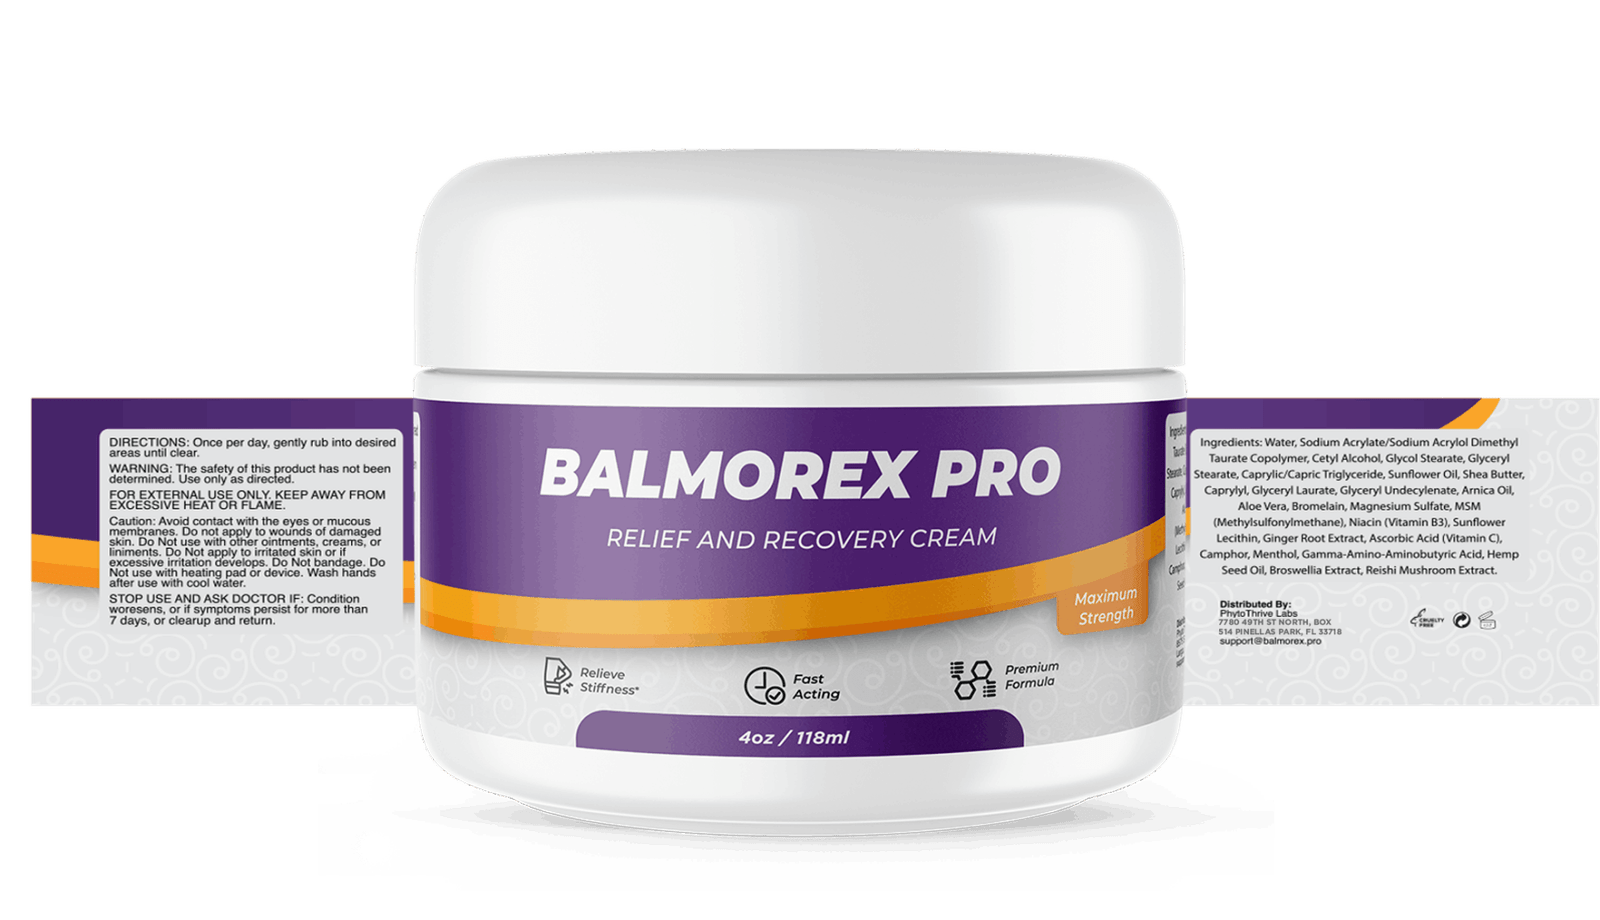 BalMorex Pro Ingredients